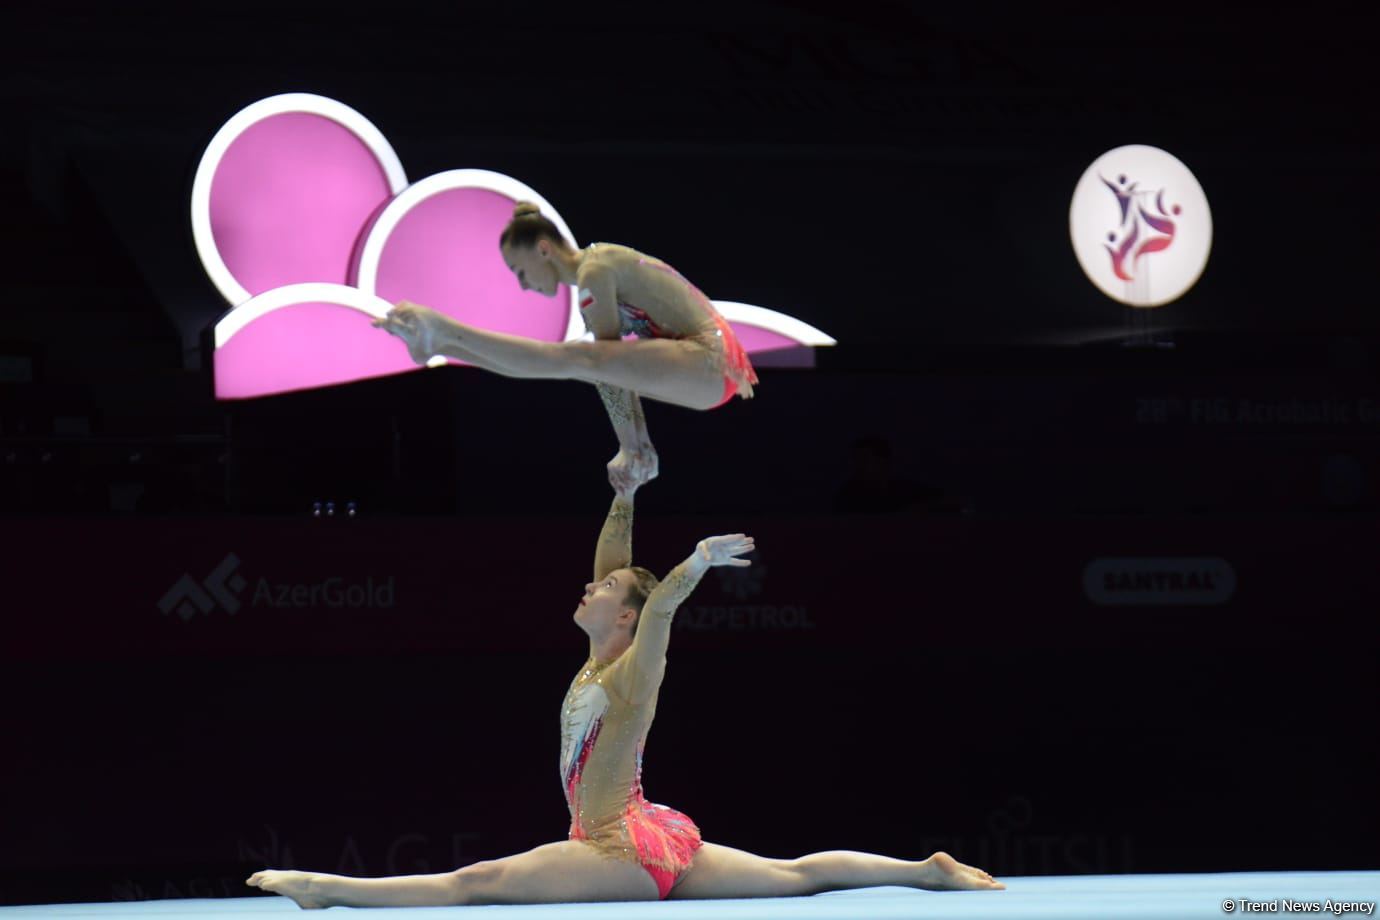 ЧМ по акробатической гимнастике в Баку: стартовали финальные соревнования (ФОТО)